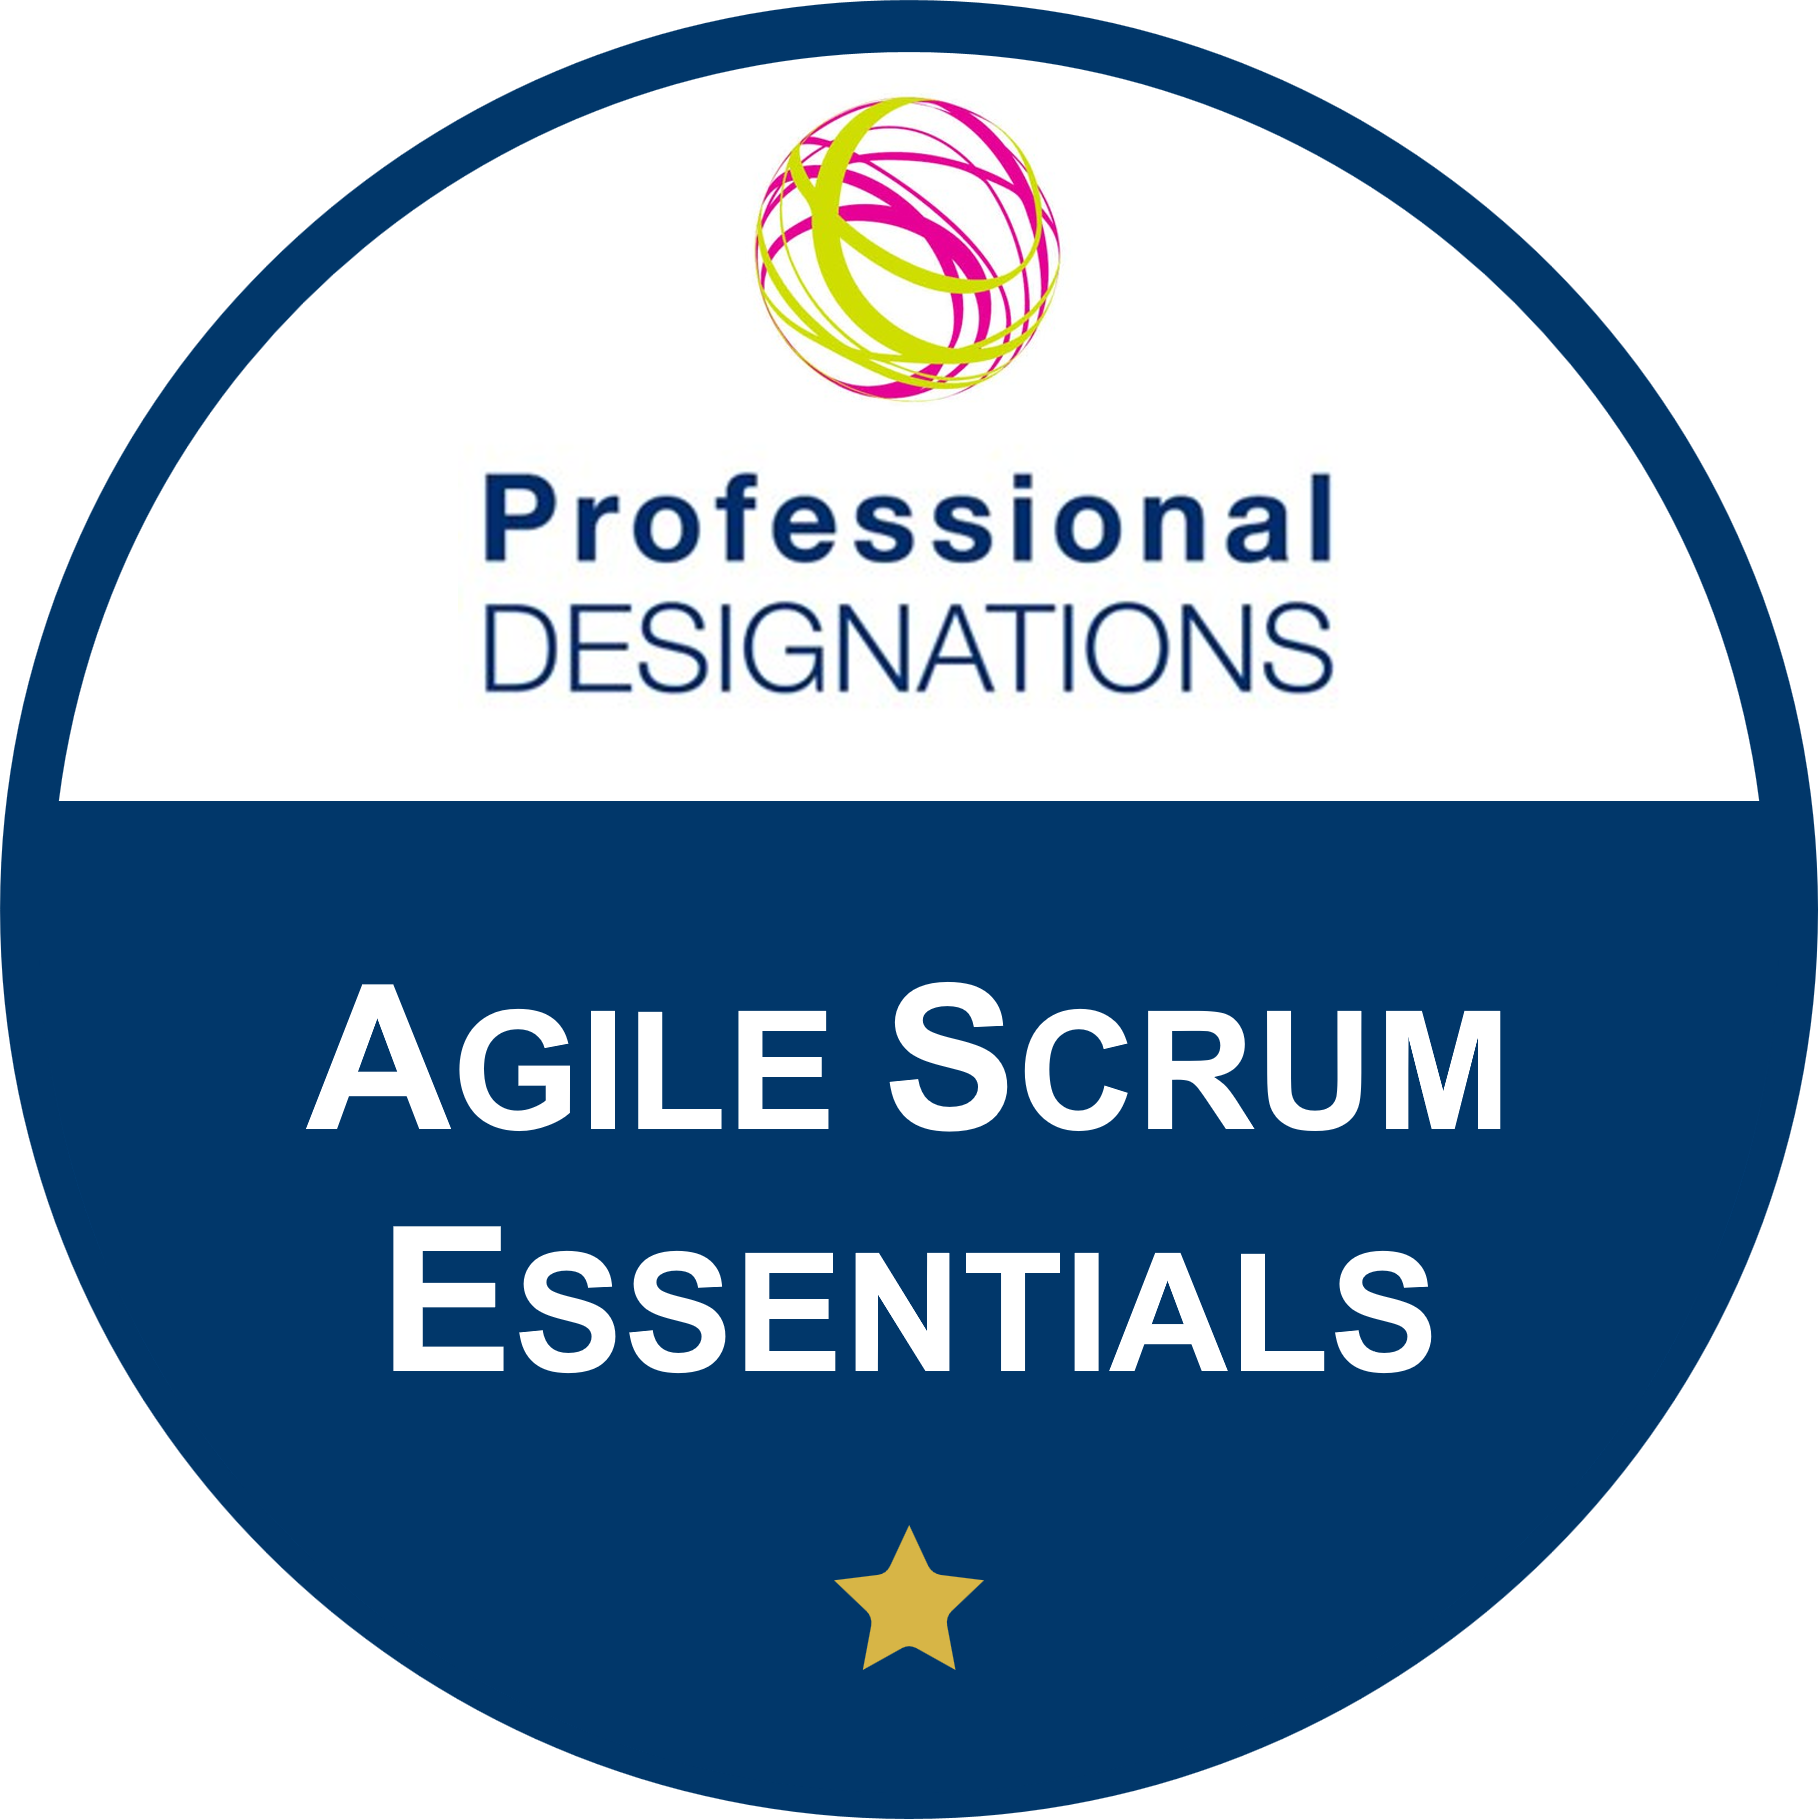 Agile Scrum Essentials - Professional Designations